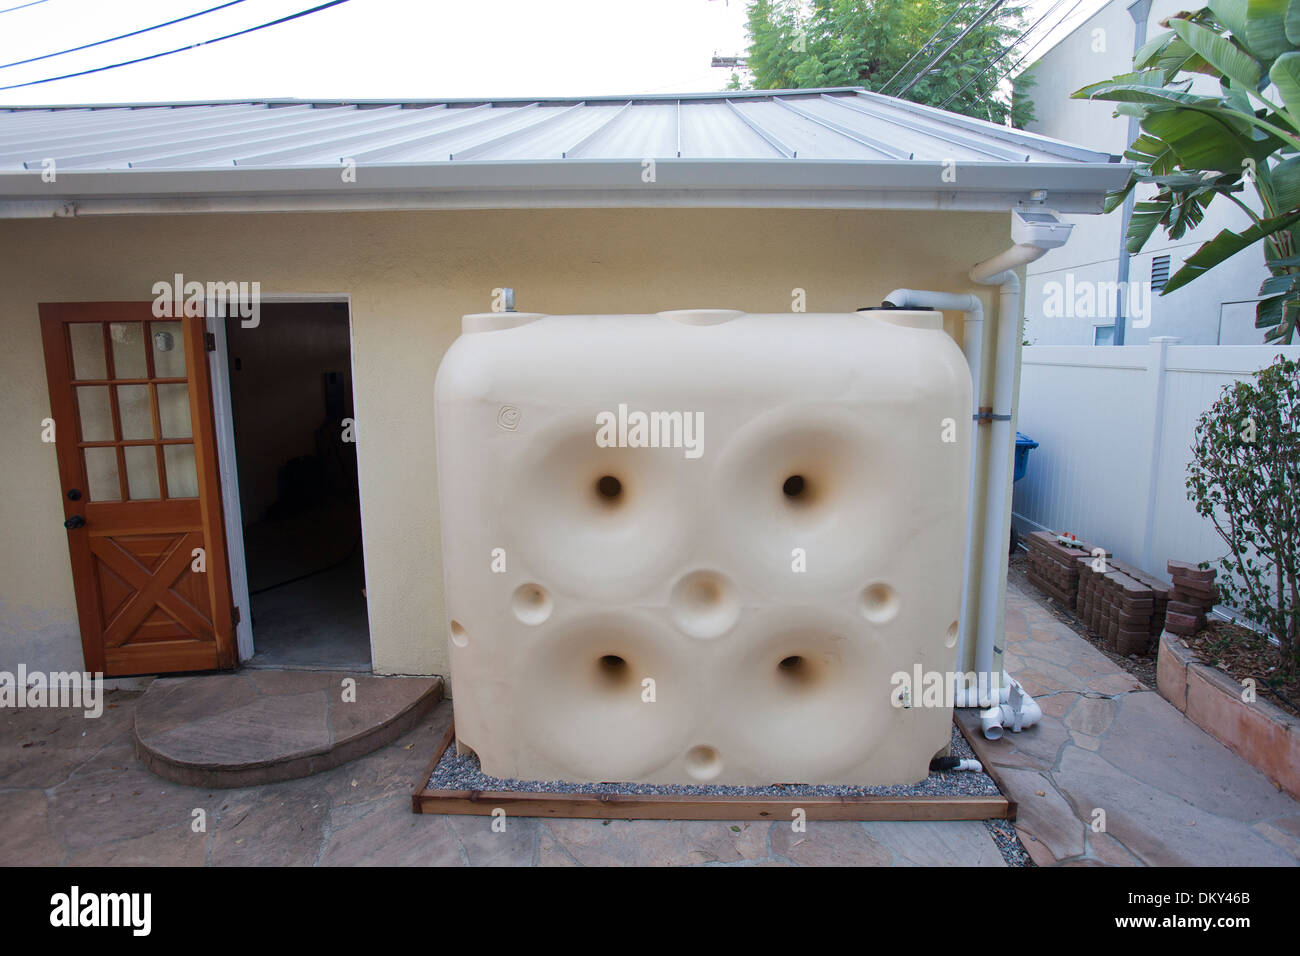 Regenwassernutzungsanlage auf ein grünes Haus, das aus dem Netz. Los Angeles, Kalifornien, USA Stockfoto